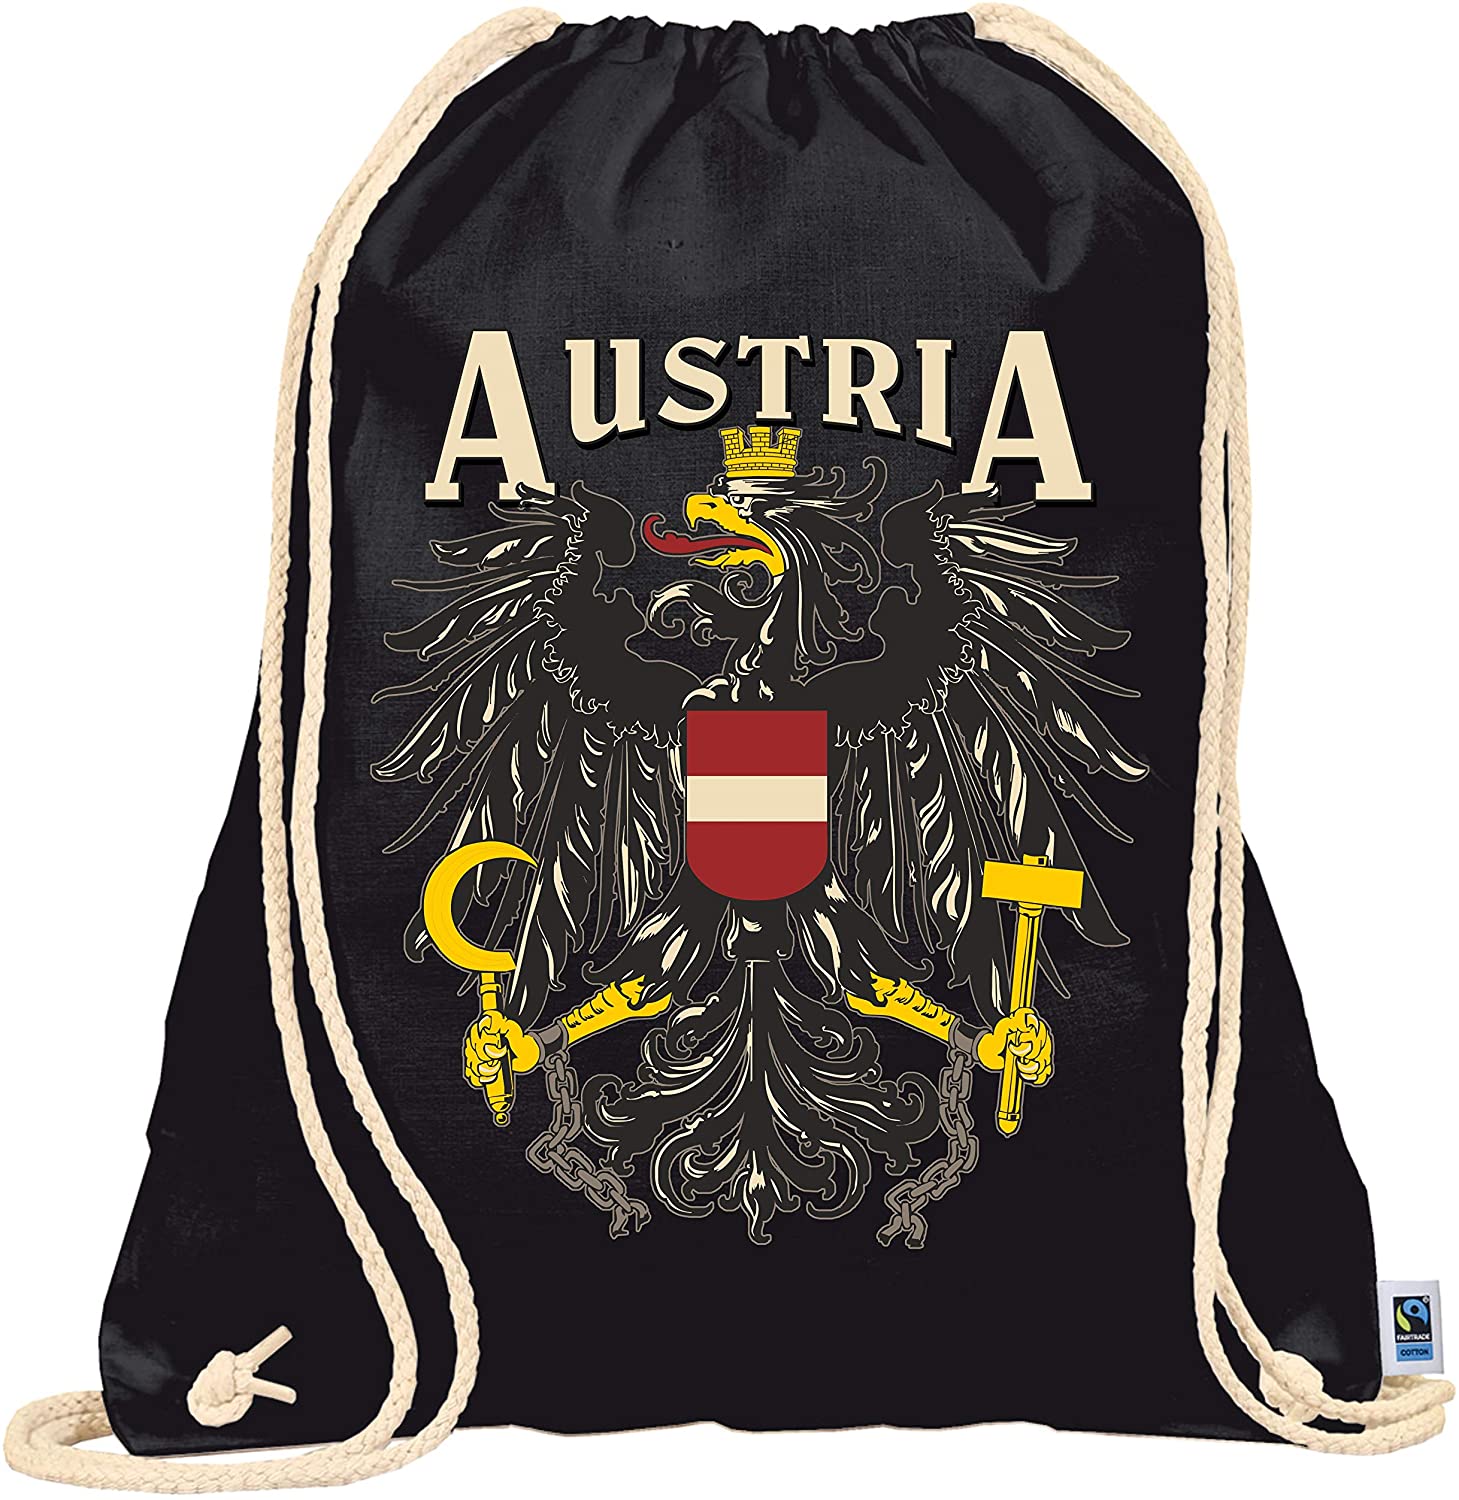 Rucksack oder Turnbeutel schwarz - Österreich Kollektion